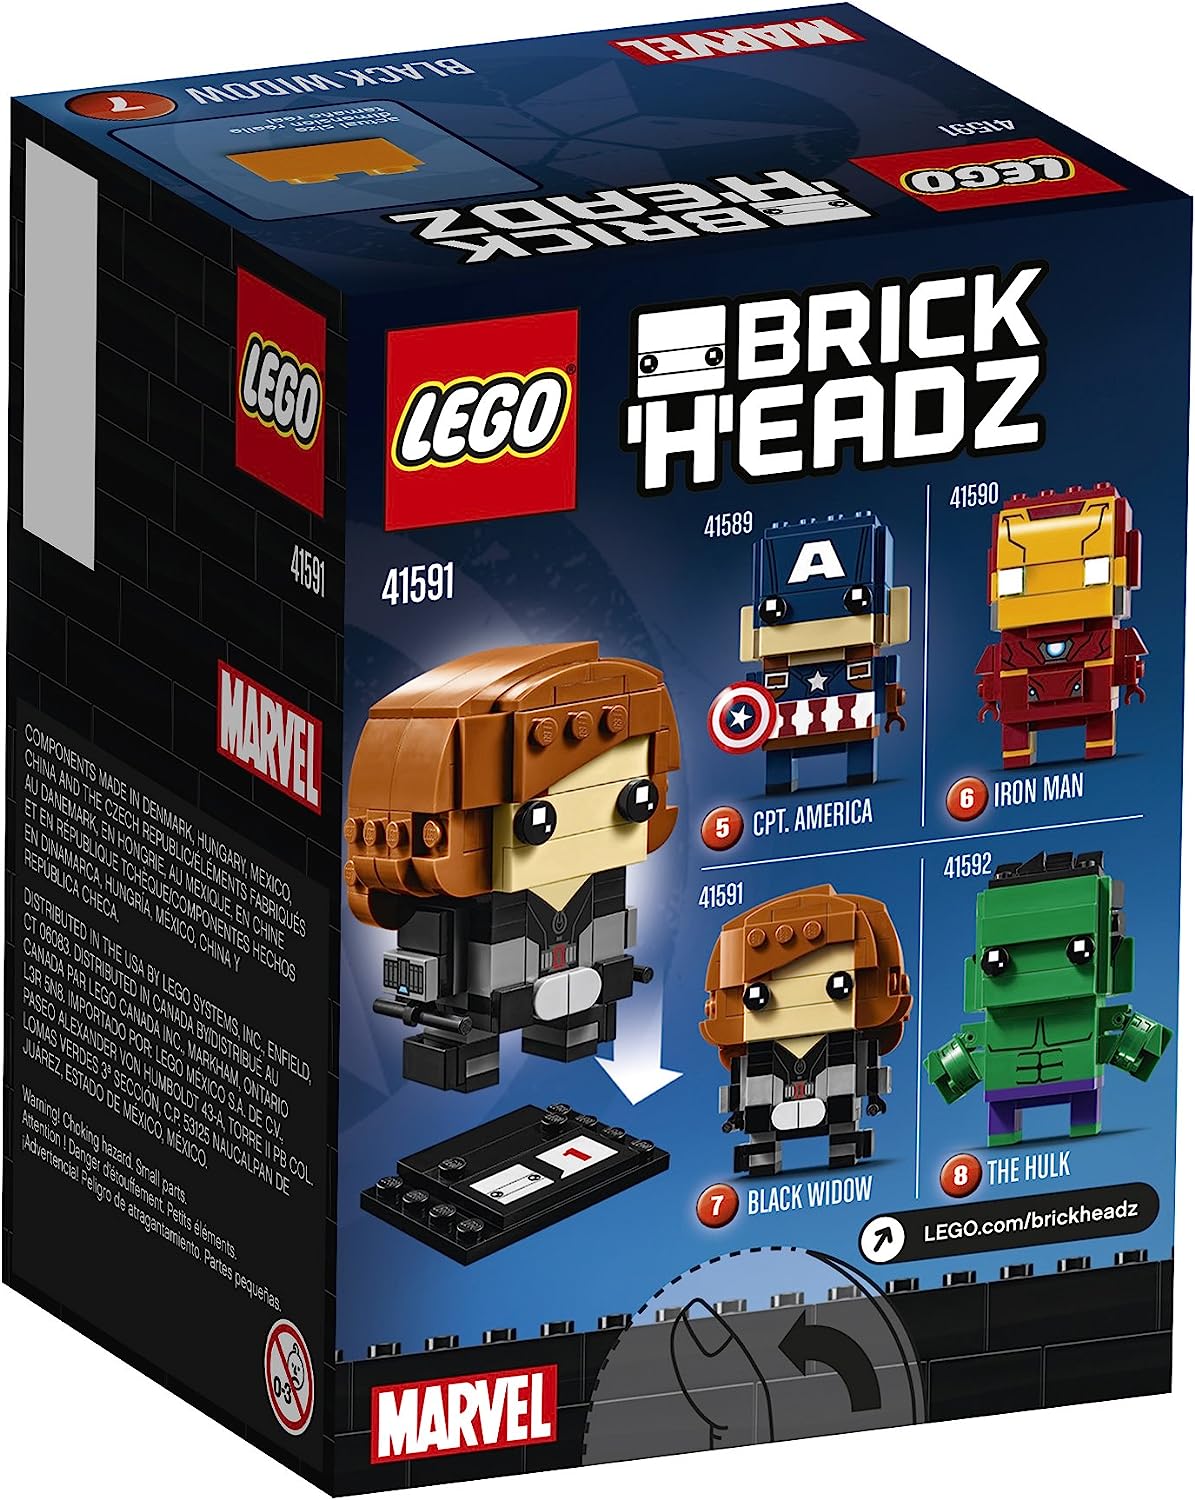 LEGO BrickHeadz Marvel 41591 Black Widow